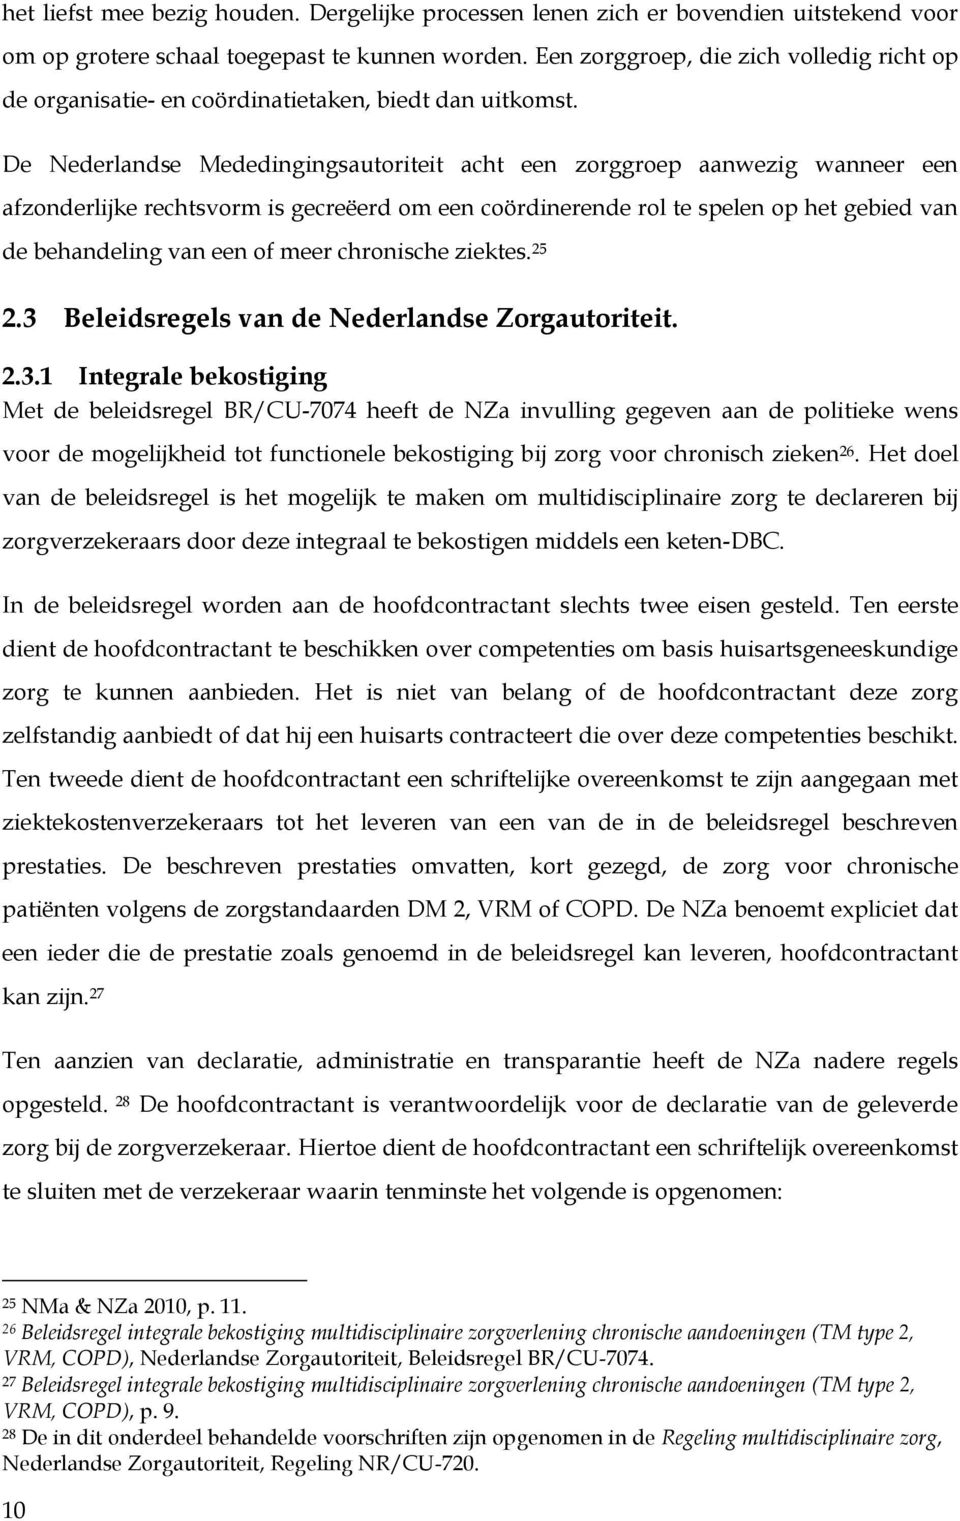 De Nederlandse Mededingingsautoriteit acht een zorggroep aanwezig wanneer een afzonderlijke rechtsvorm is gecreëerd om een coördinerende rol te spelen op het gebied van de behandeling van een of meer